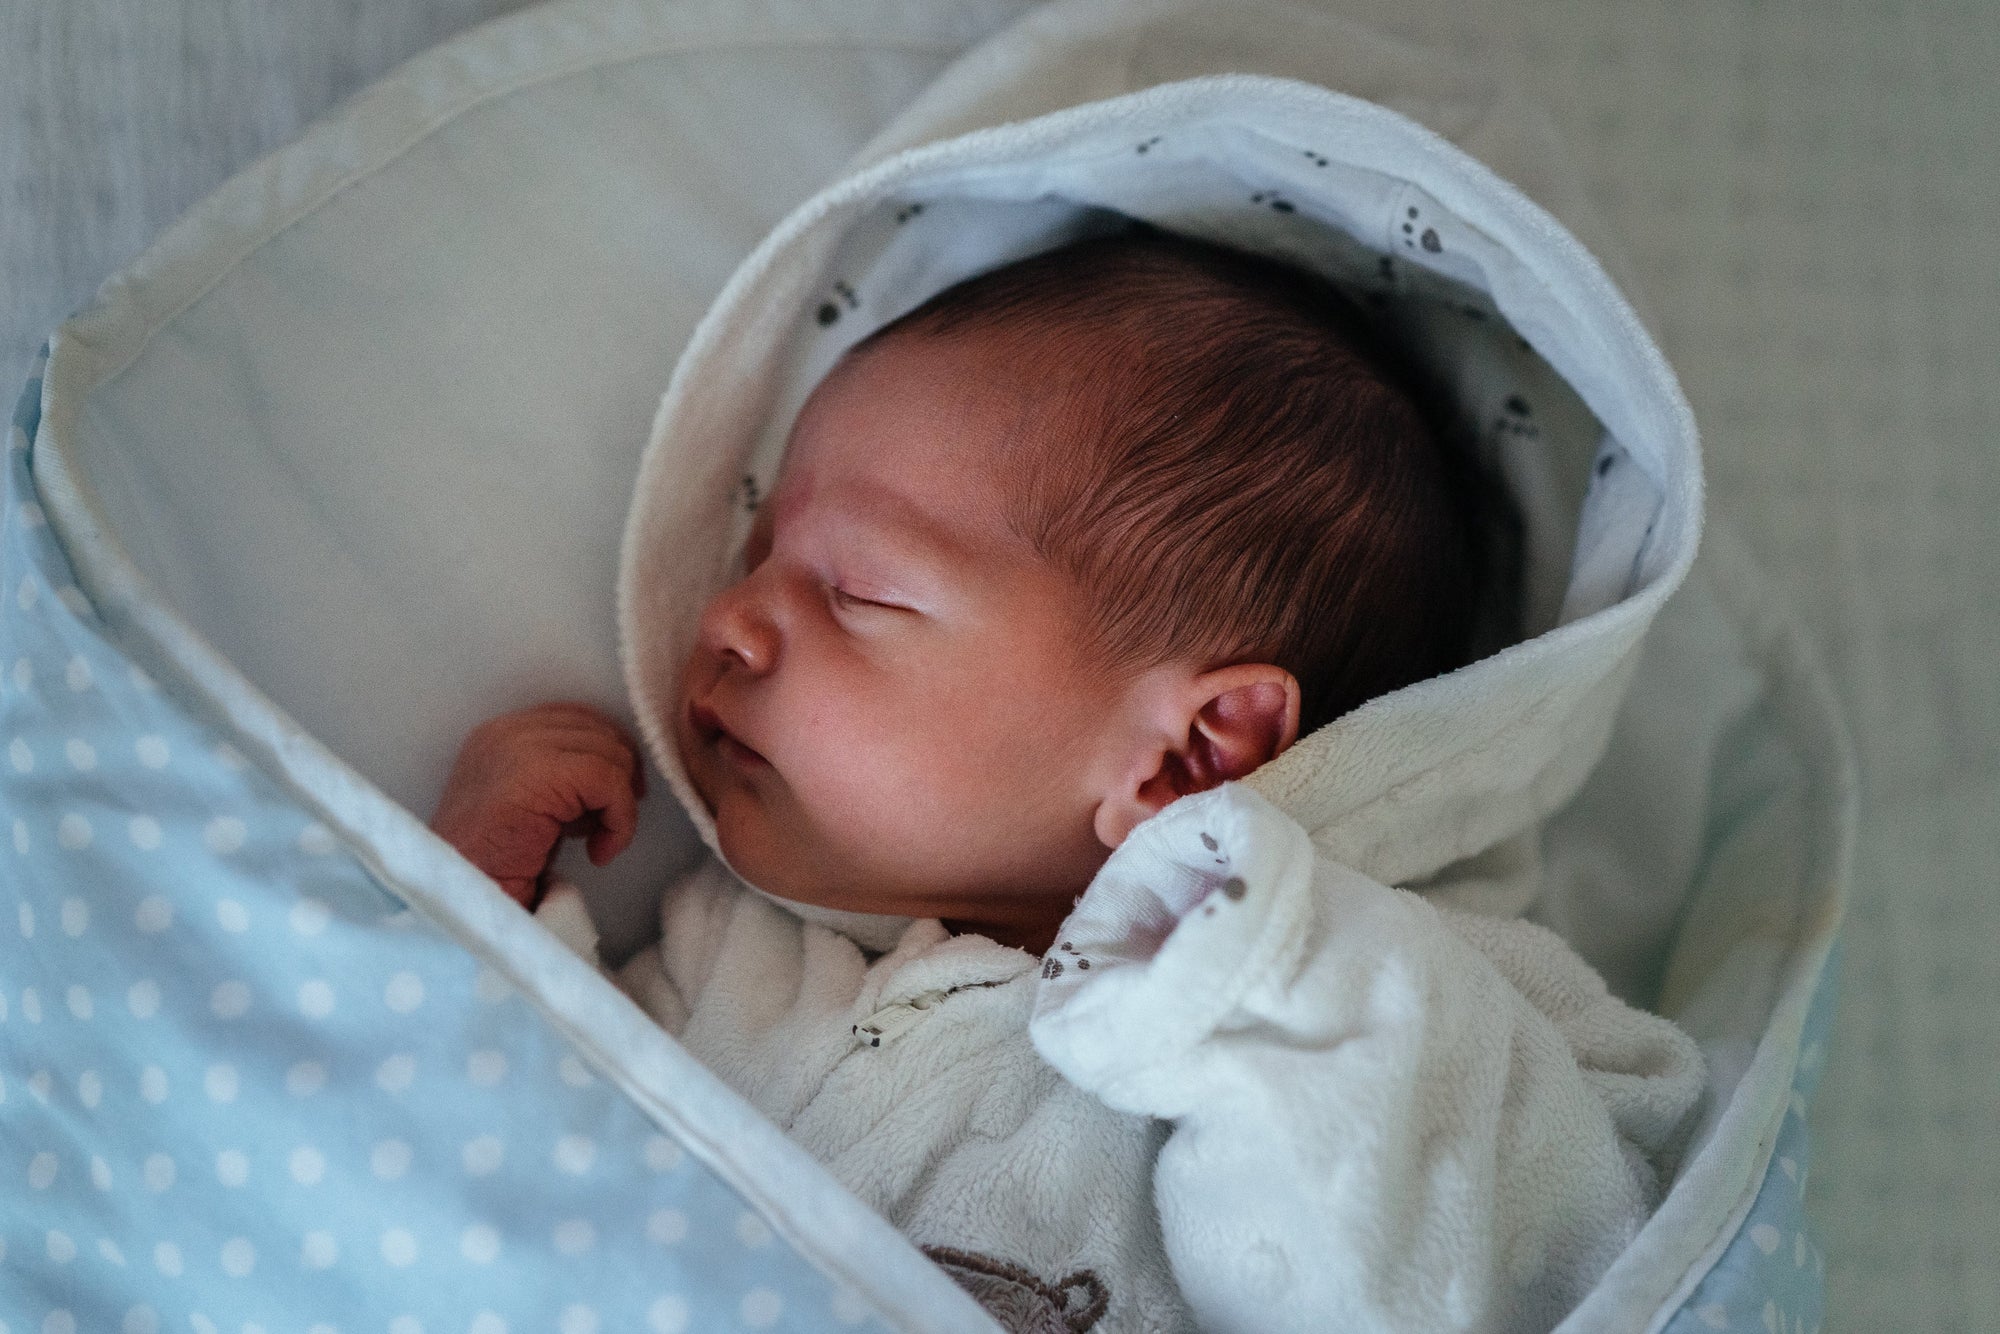 Träumen Neugeborene? Blogbeitrag Mabyen Schlaf